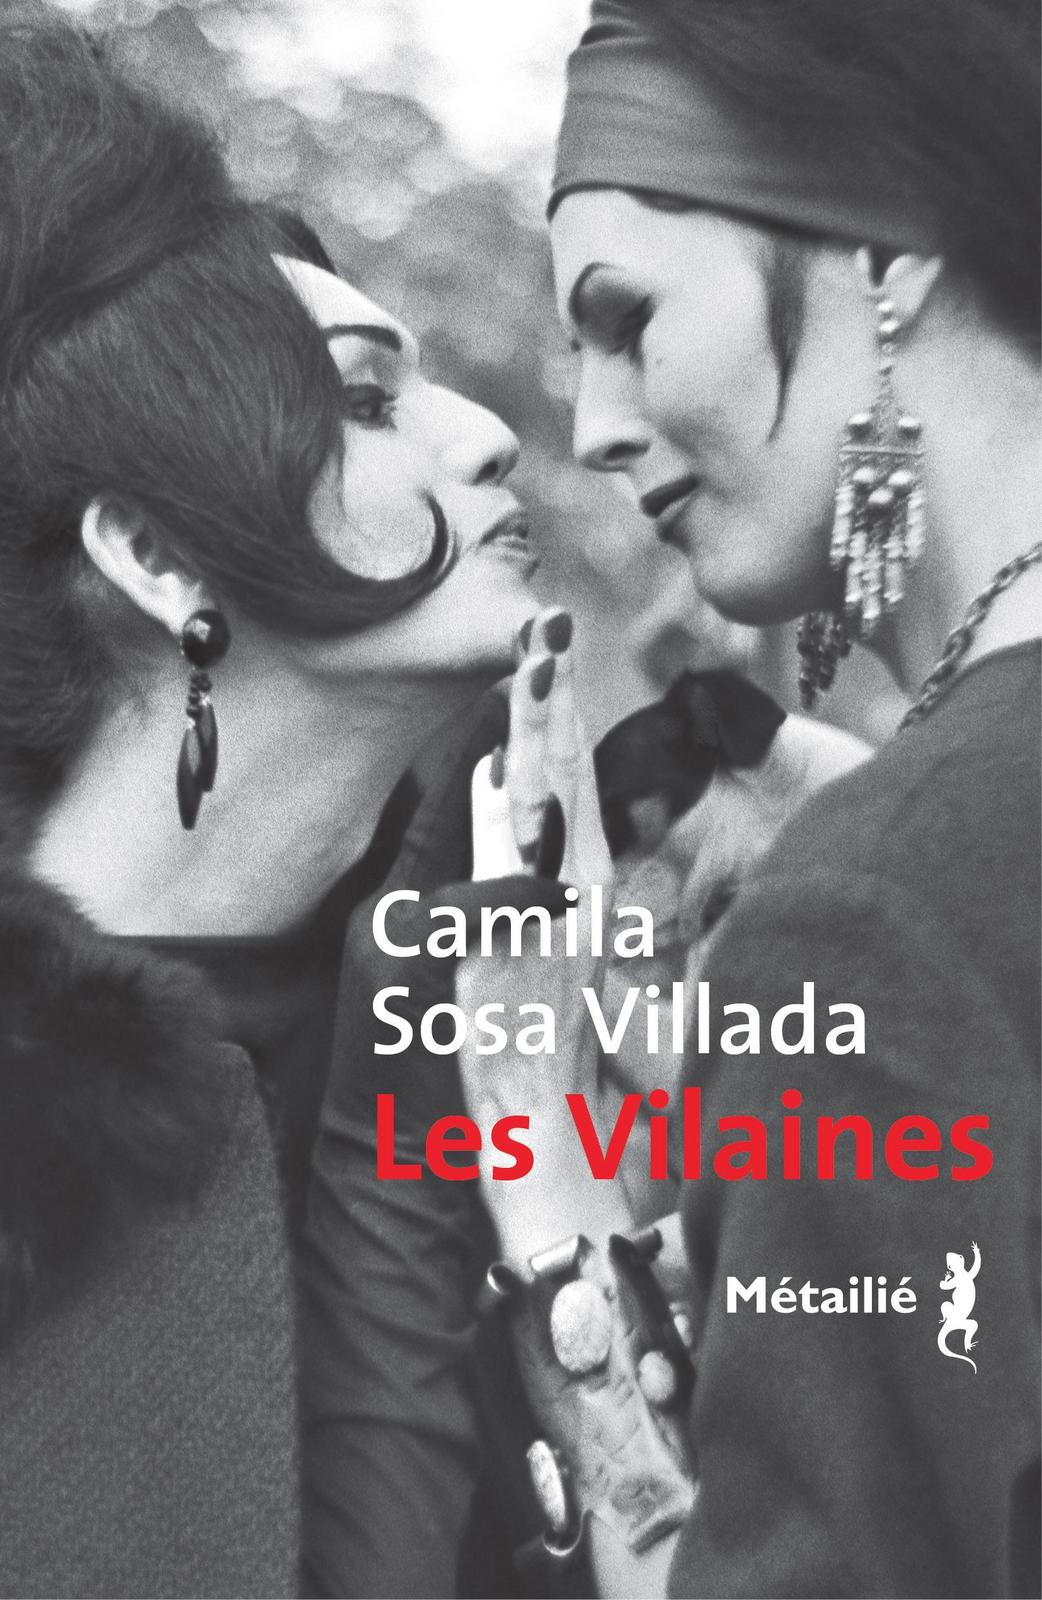 Camila Sosa Villada: Les vilaines (French language, 2021, Métailié)